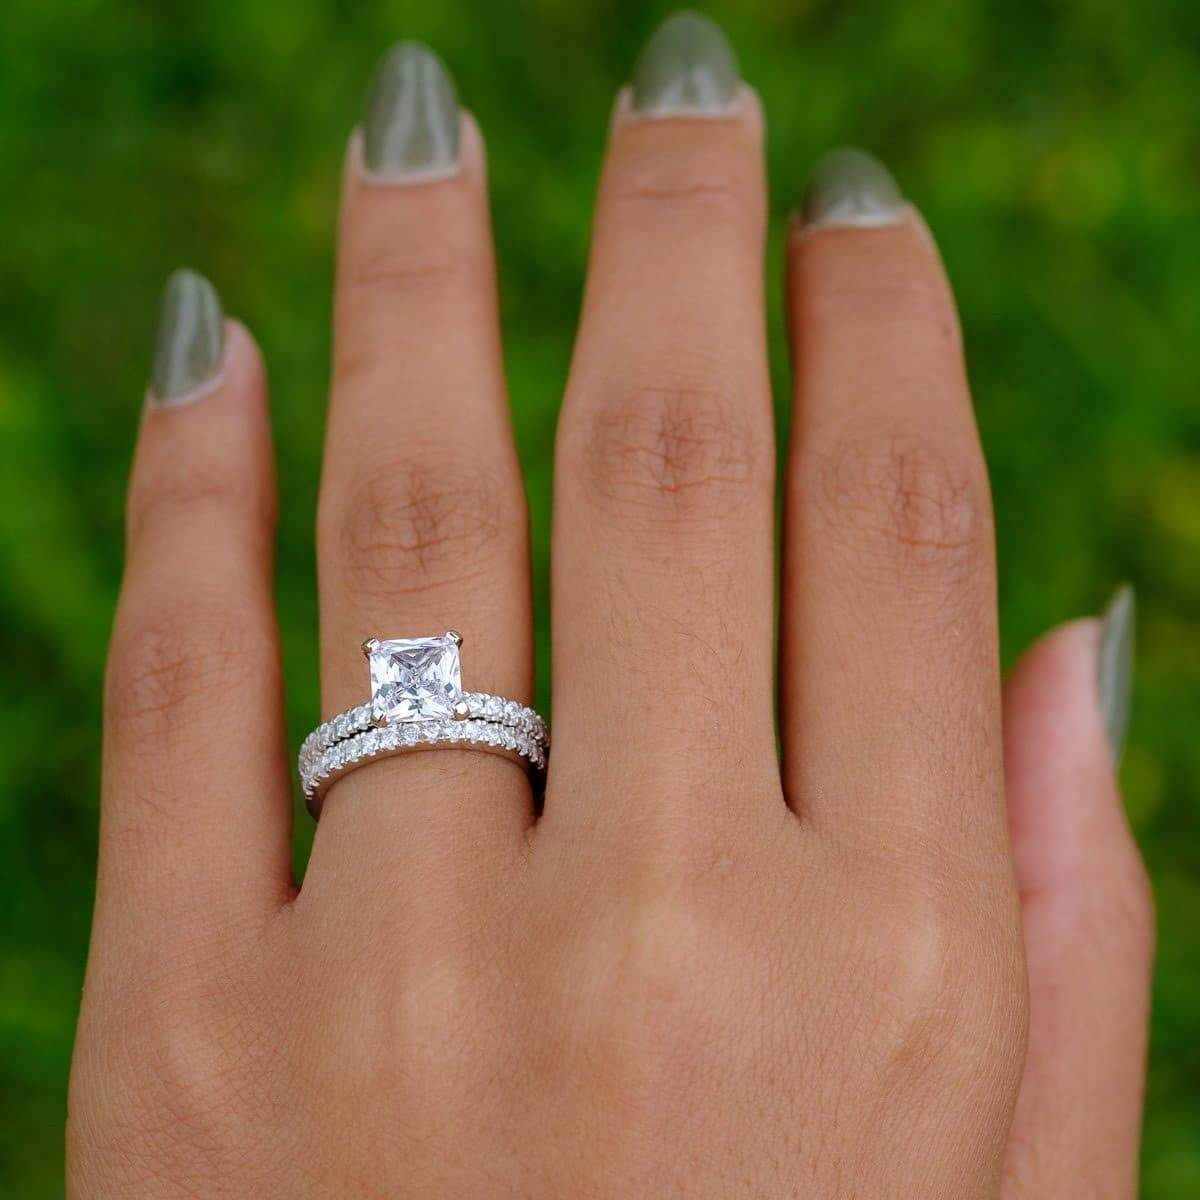 2 Carat Princess Cut Engagement Ring
 2 Carat Engagement Ring